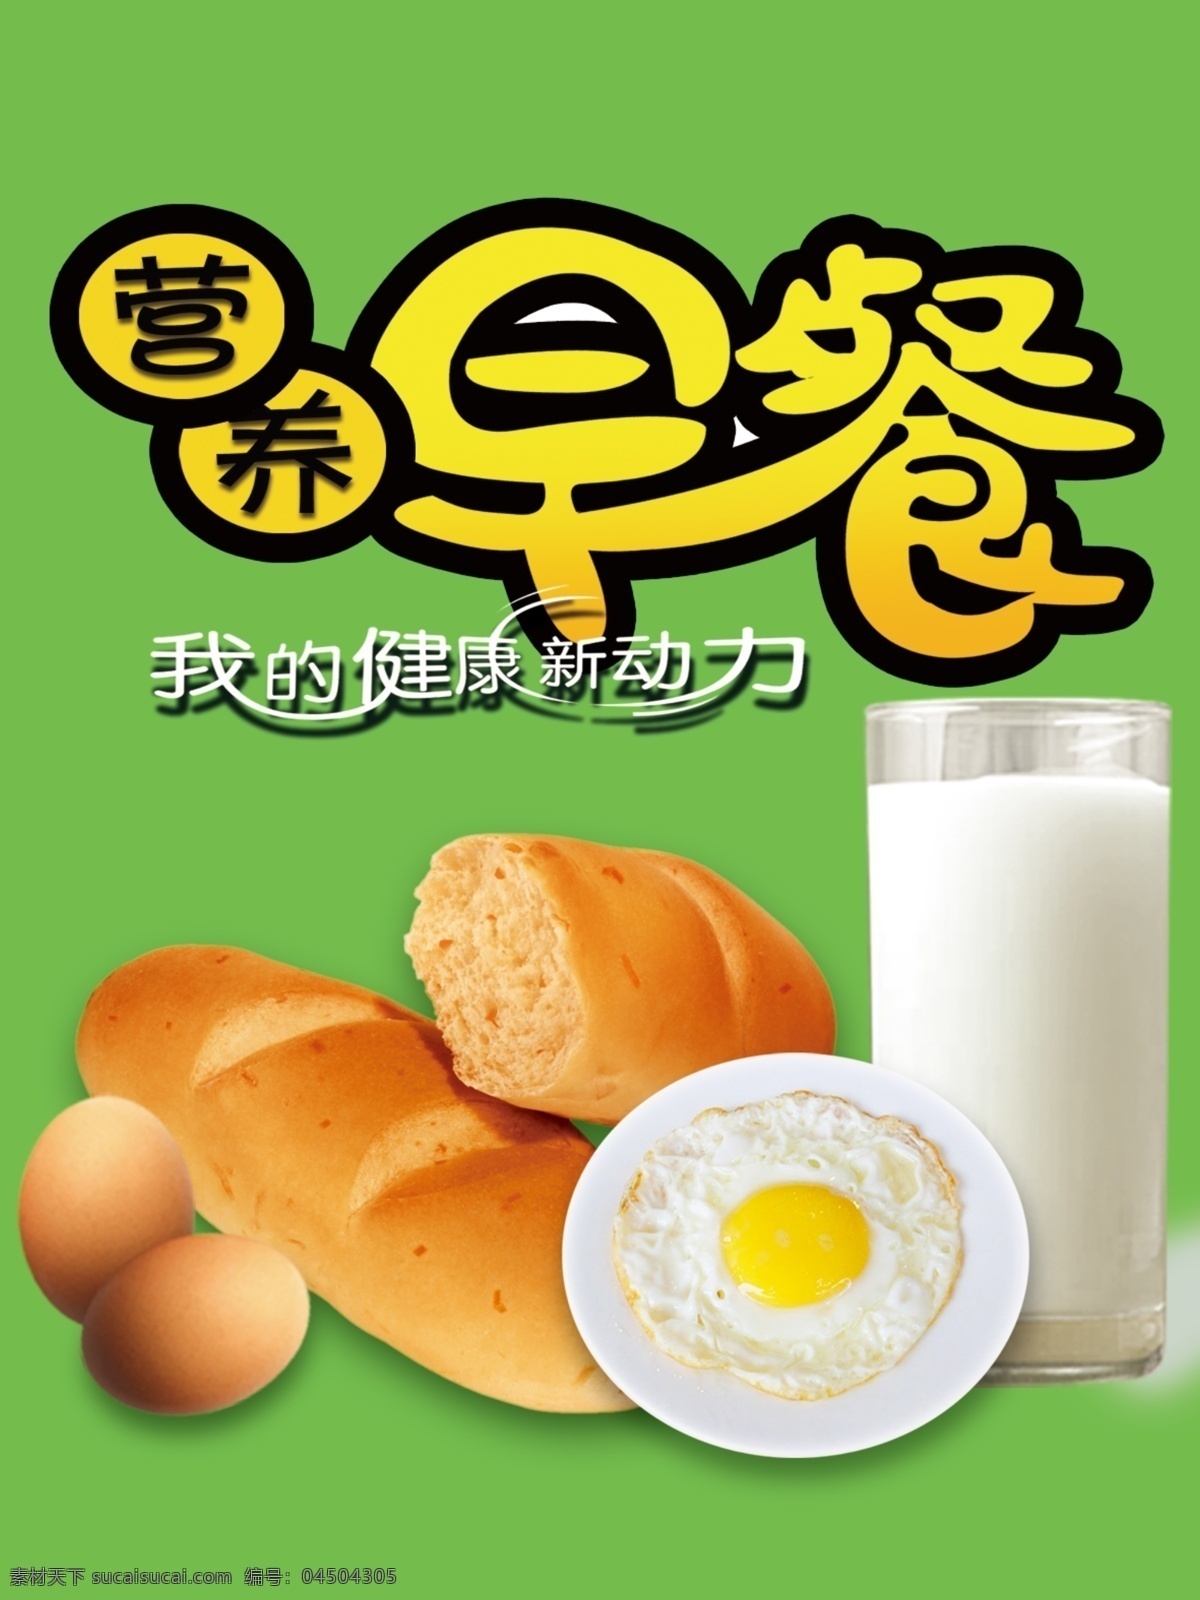 早餐 鸡蛋 奶 面包 煎鸡蛋 广告设计模板 源文件